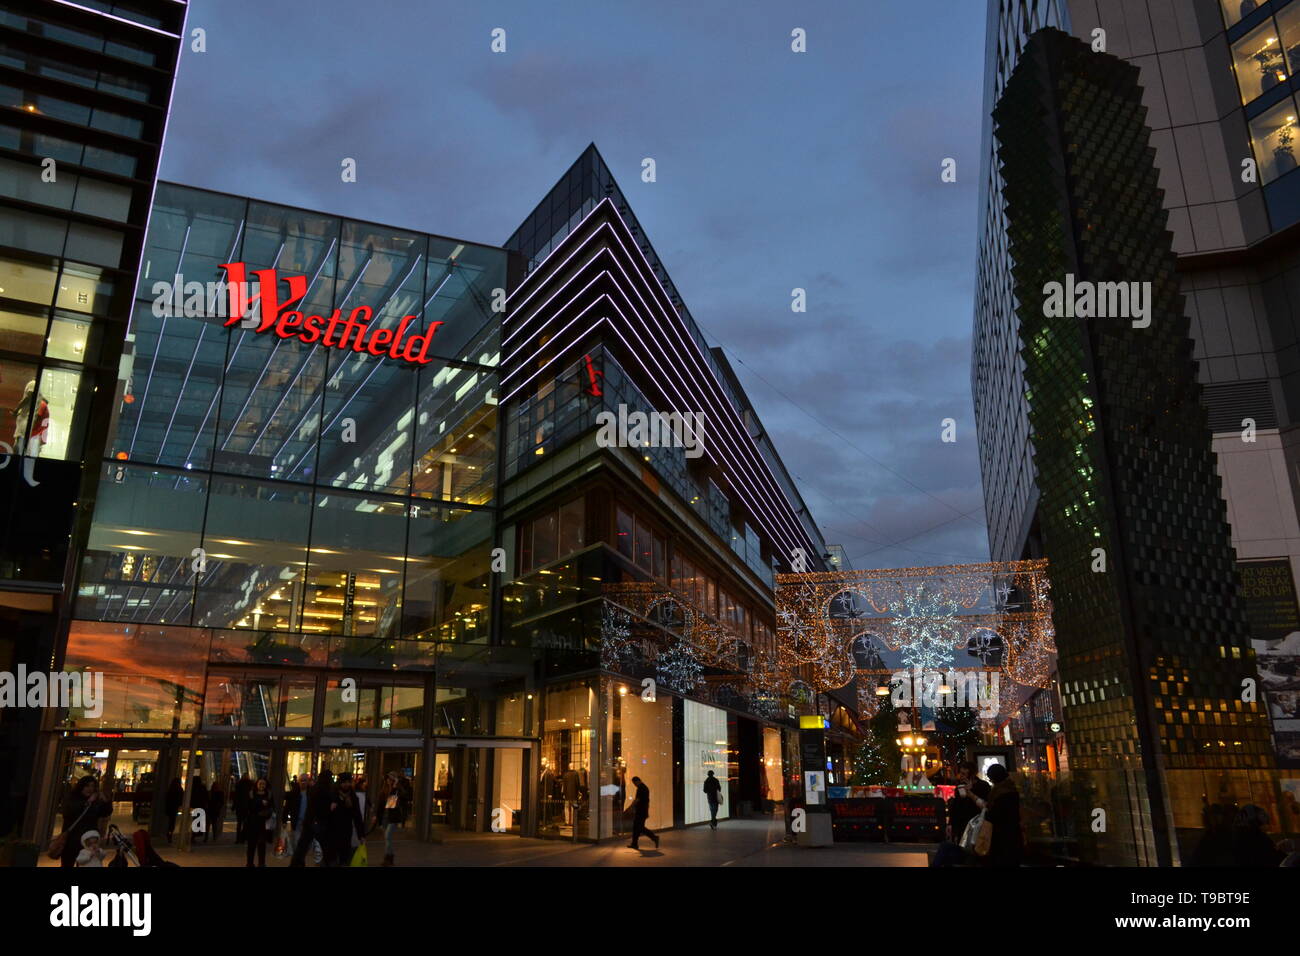 Londra/Regno Unito - Dicembre 15, 2014: centro commerciale Westfield Stratford City in Stratford durante il periodo natalizio in ore notturne. Foto Stock